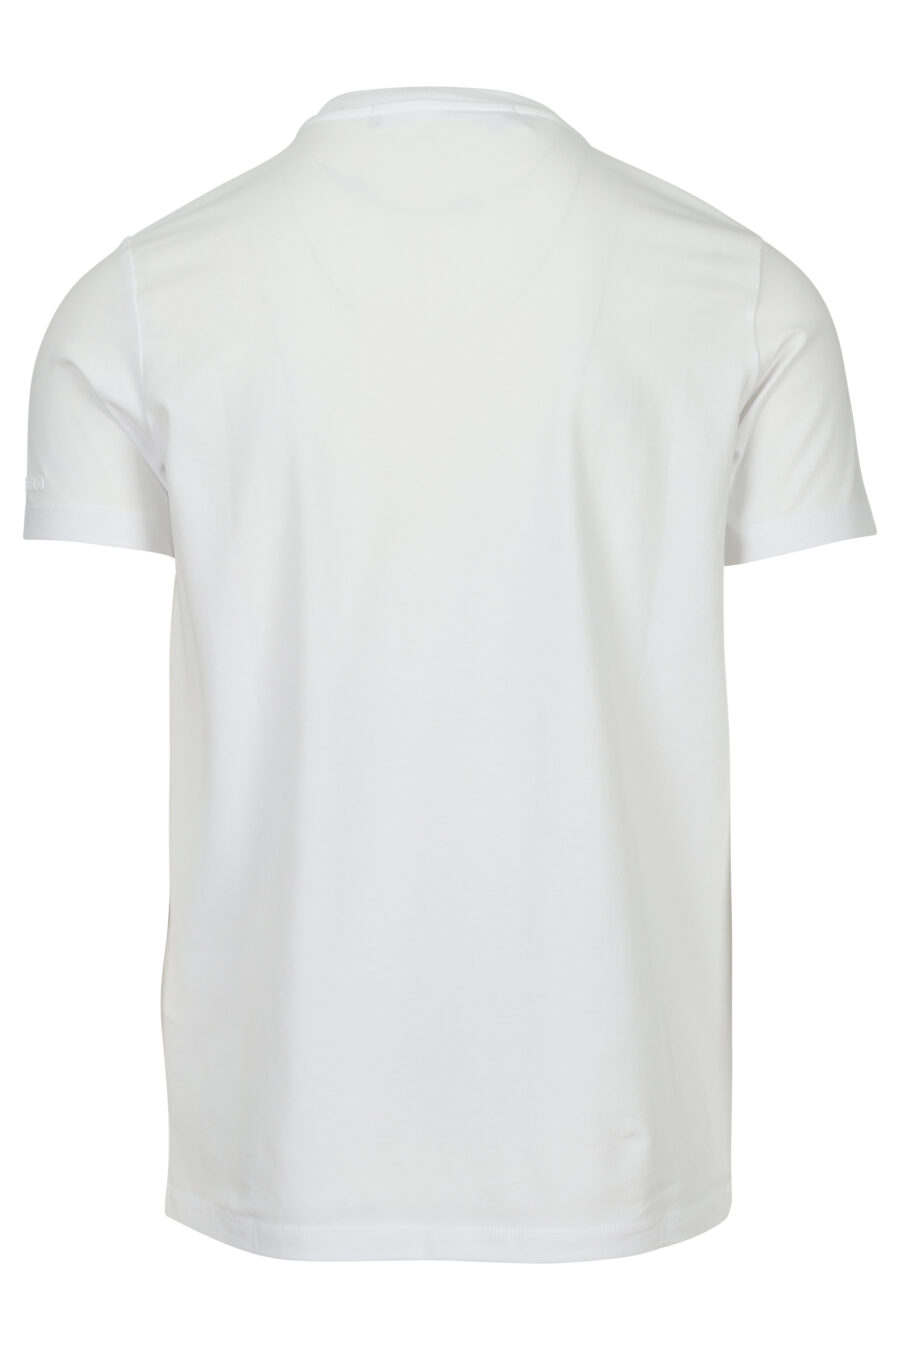 Camiseta blanca con maxilogo "karl" monocromático - 4062226788564 1